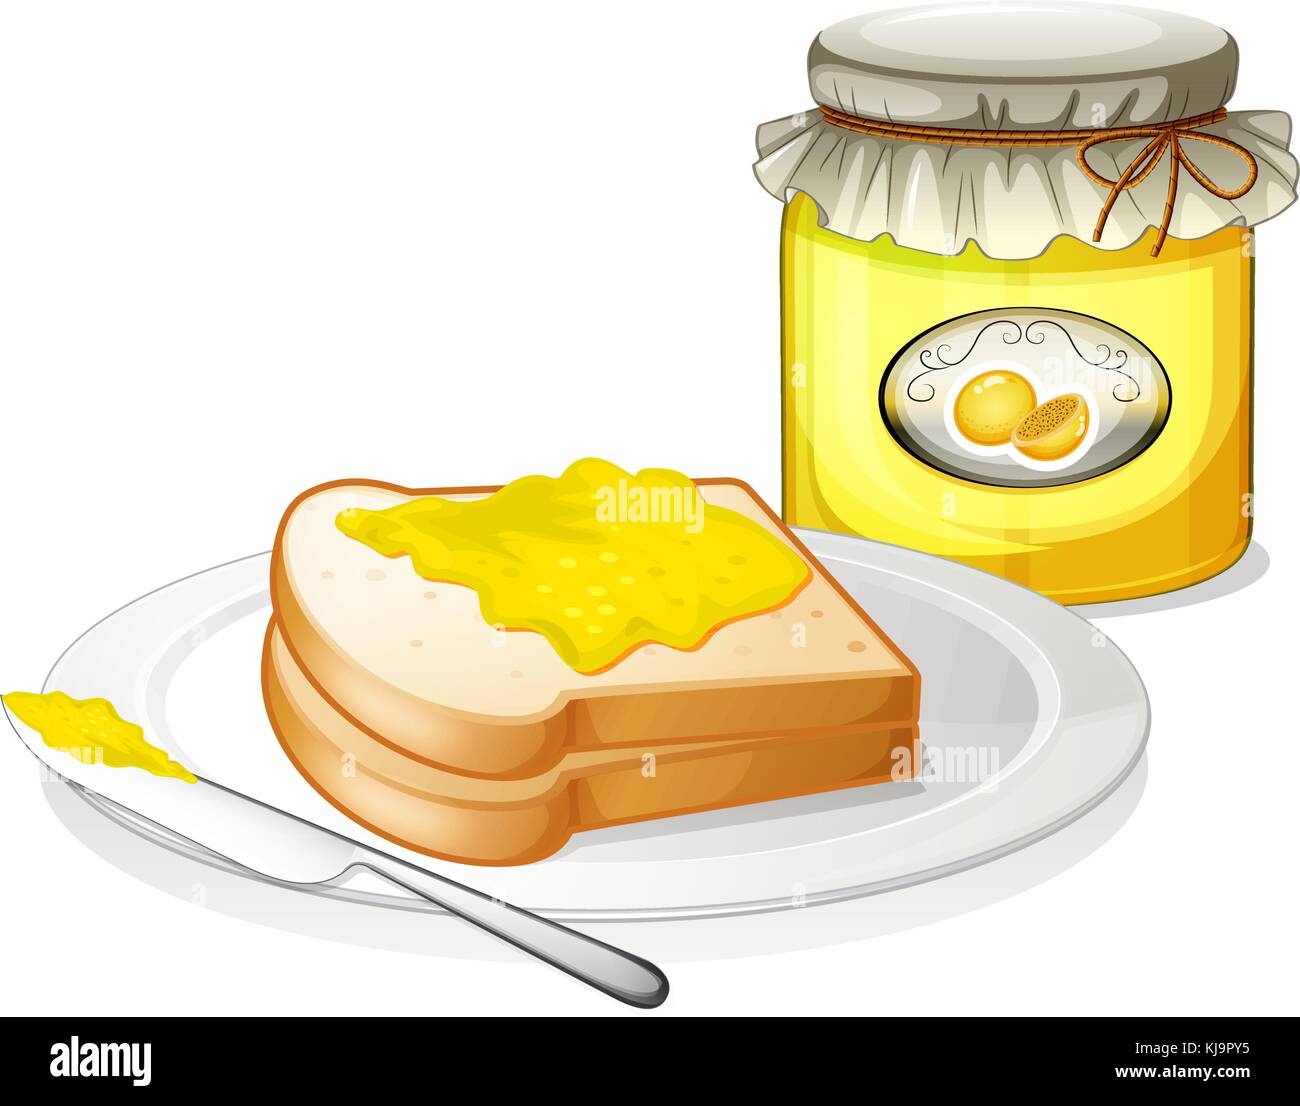 Illustrazione di un pane con un sandwich spread su uno sfondo bianco Illustrazione Vettoriale